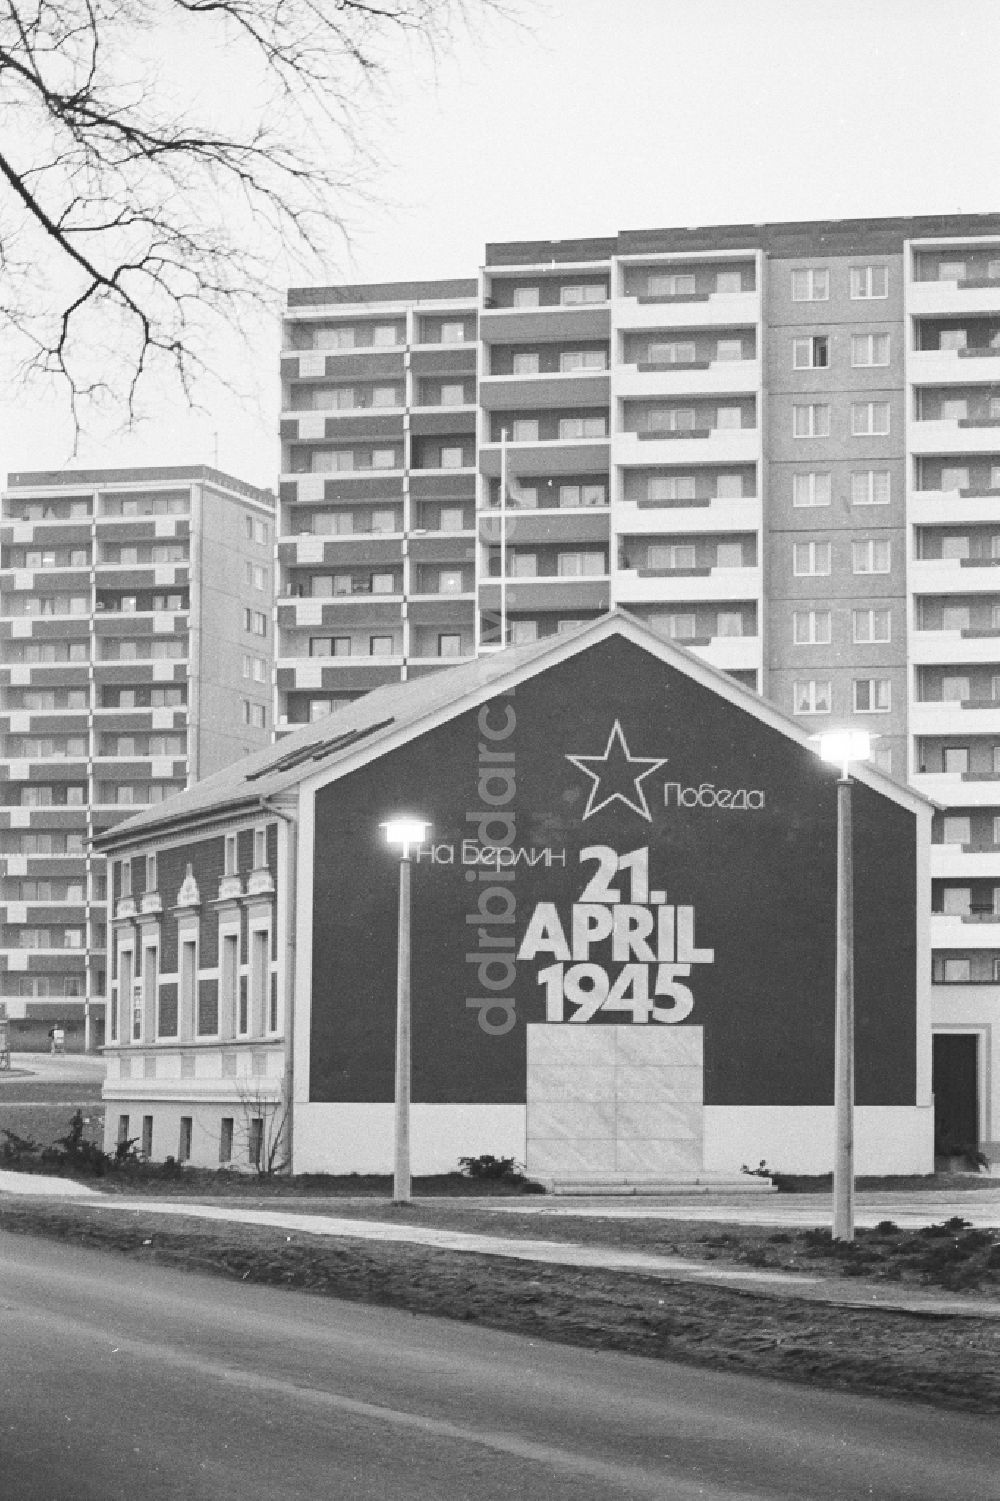 DDR-Bildarchiv: Berlin - Geschichtskabinett Haus der Befreiung im Ortsteil Marzahn in Berlin, der ehemaligen Hauptstadt der DDR, Deutsche Demokratische Republik